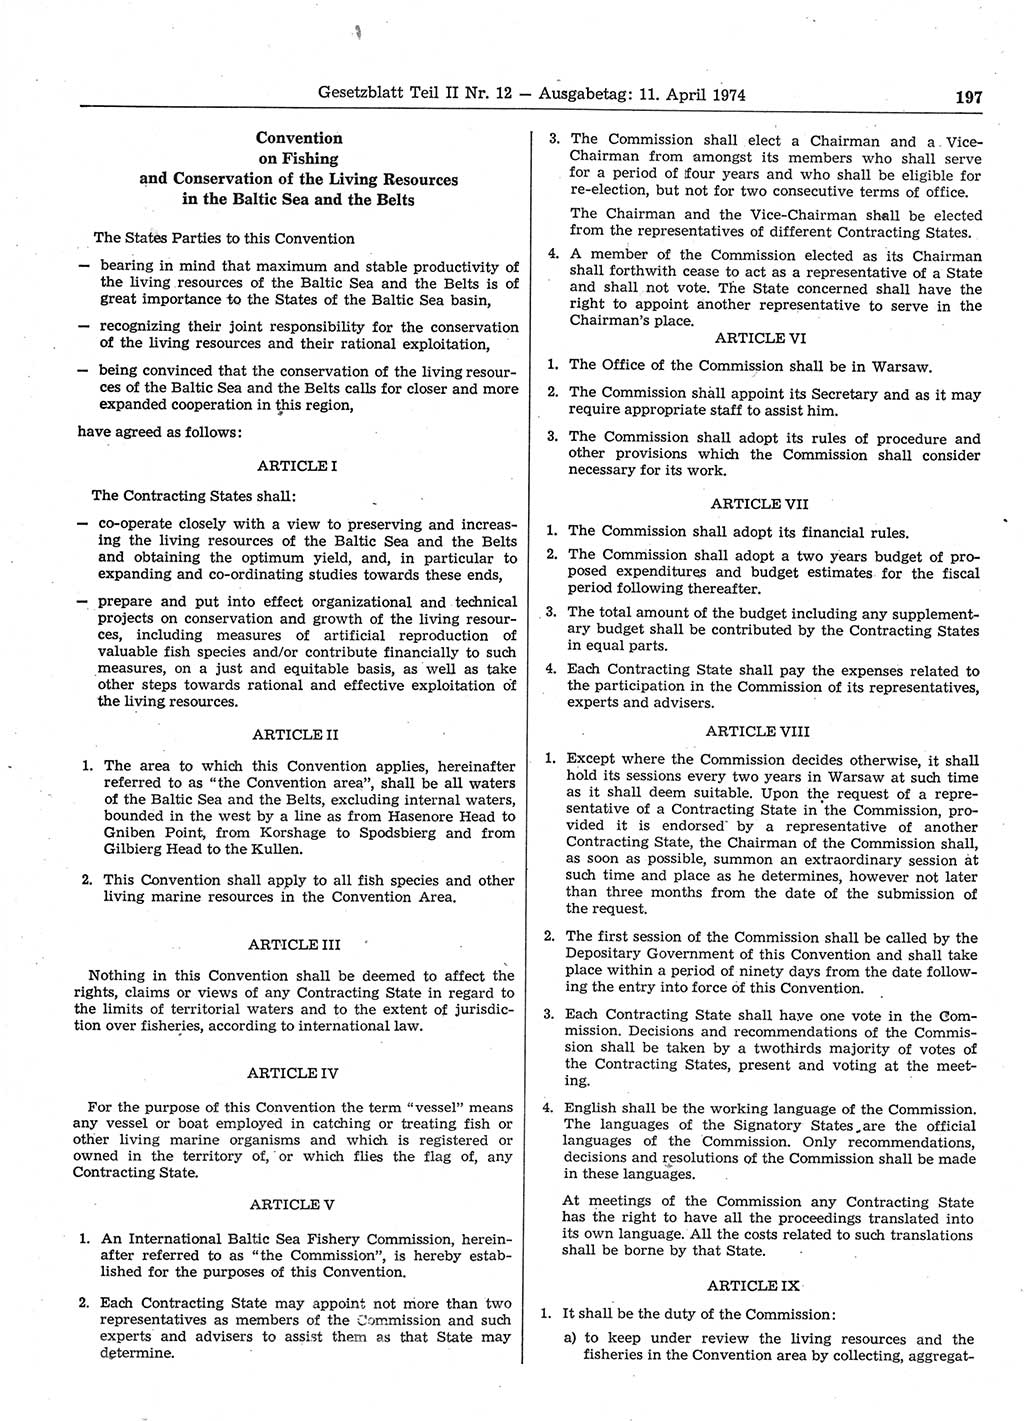 Gesetzblatt (GBl.) der Deutschen Demokratischen Republik (DDR) Teil ⅠⅠ 1974, Seite 197 (GBl. DDR ⅠⅠ 1974, S. 197)